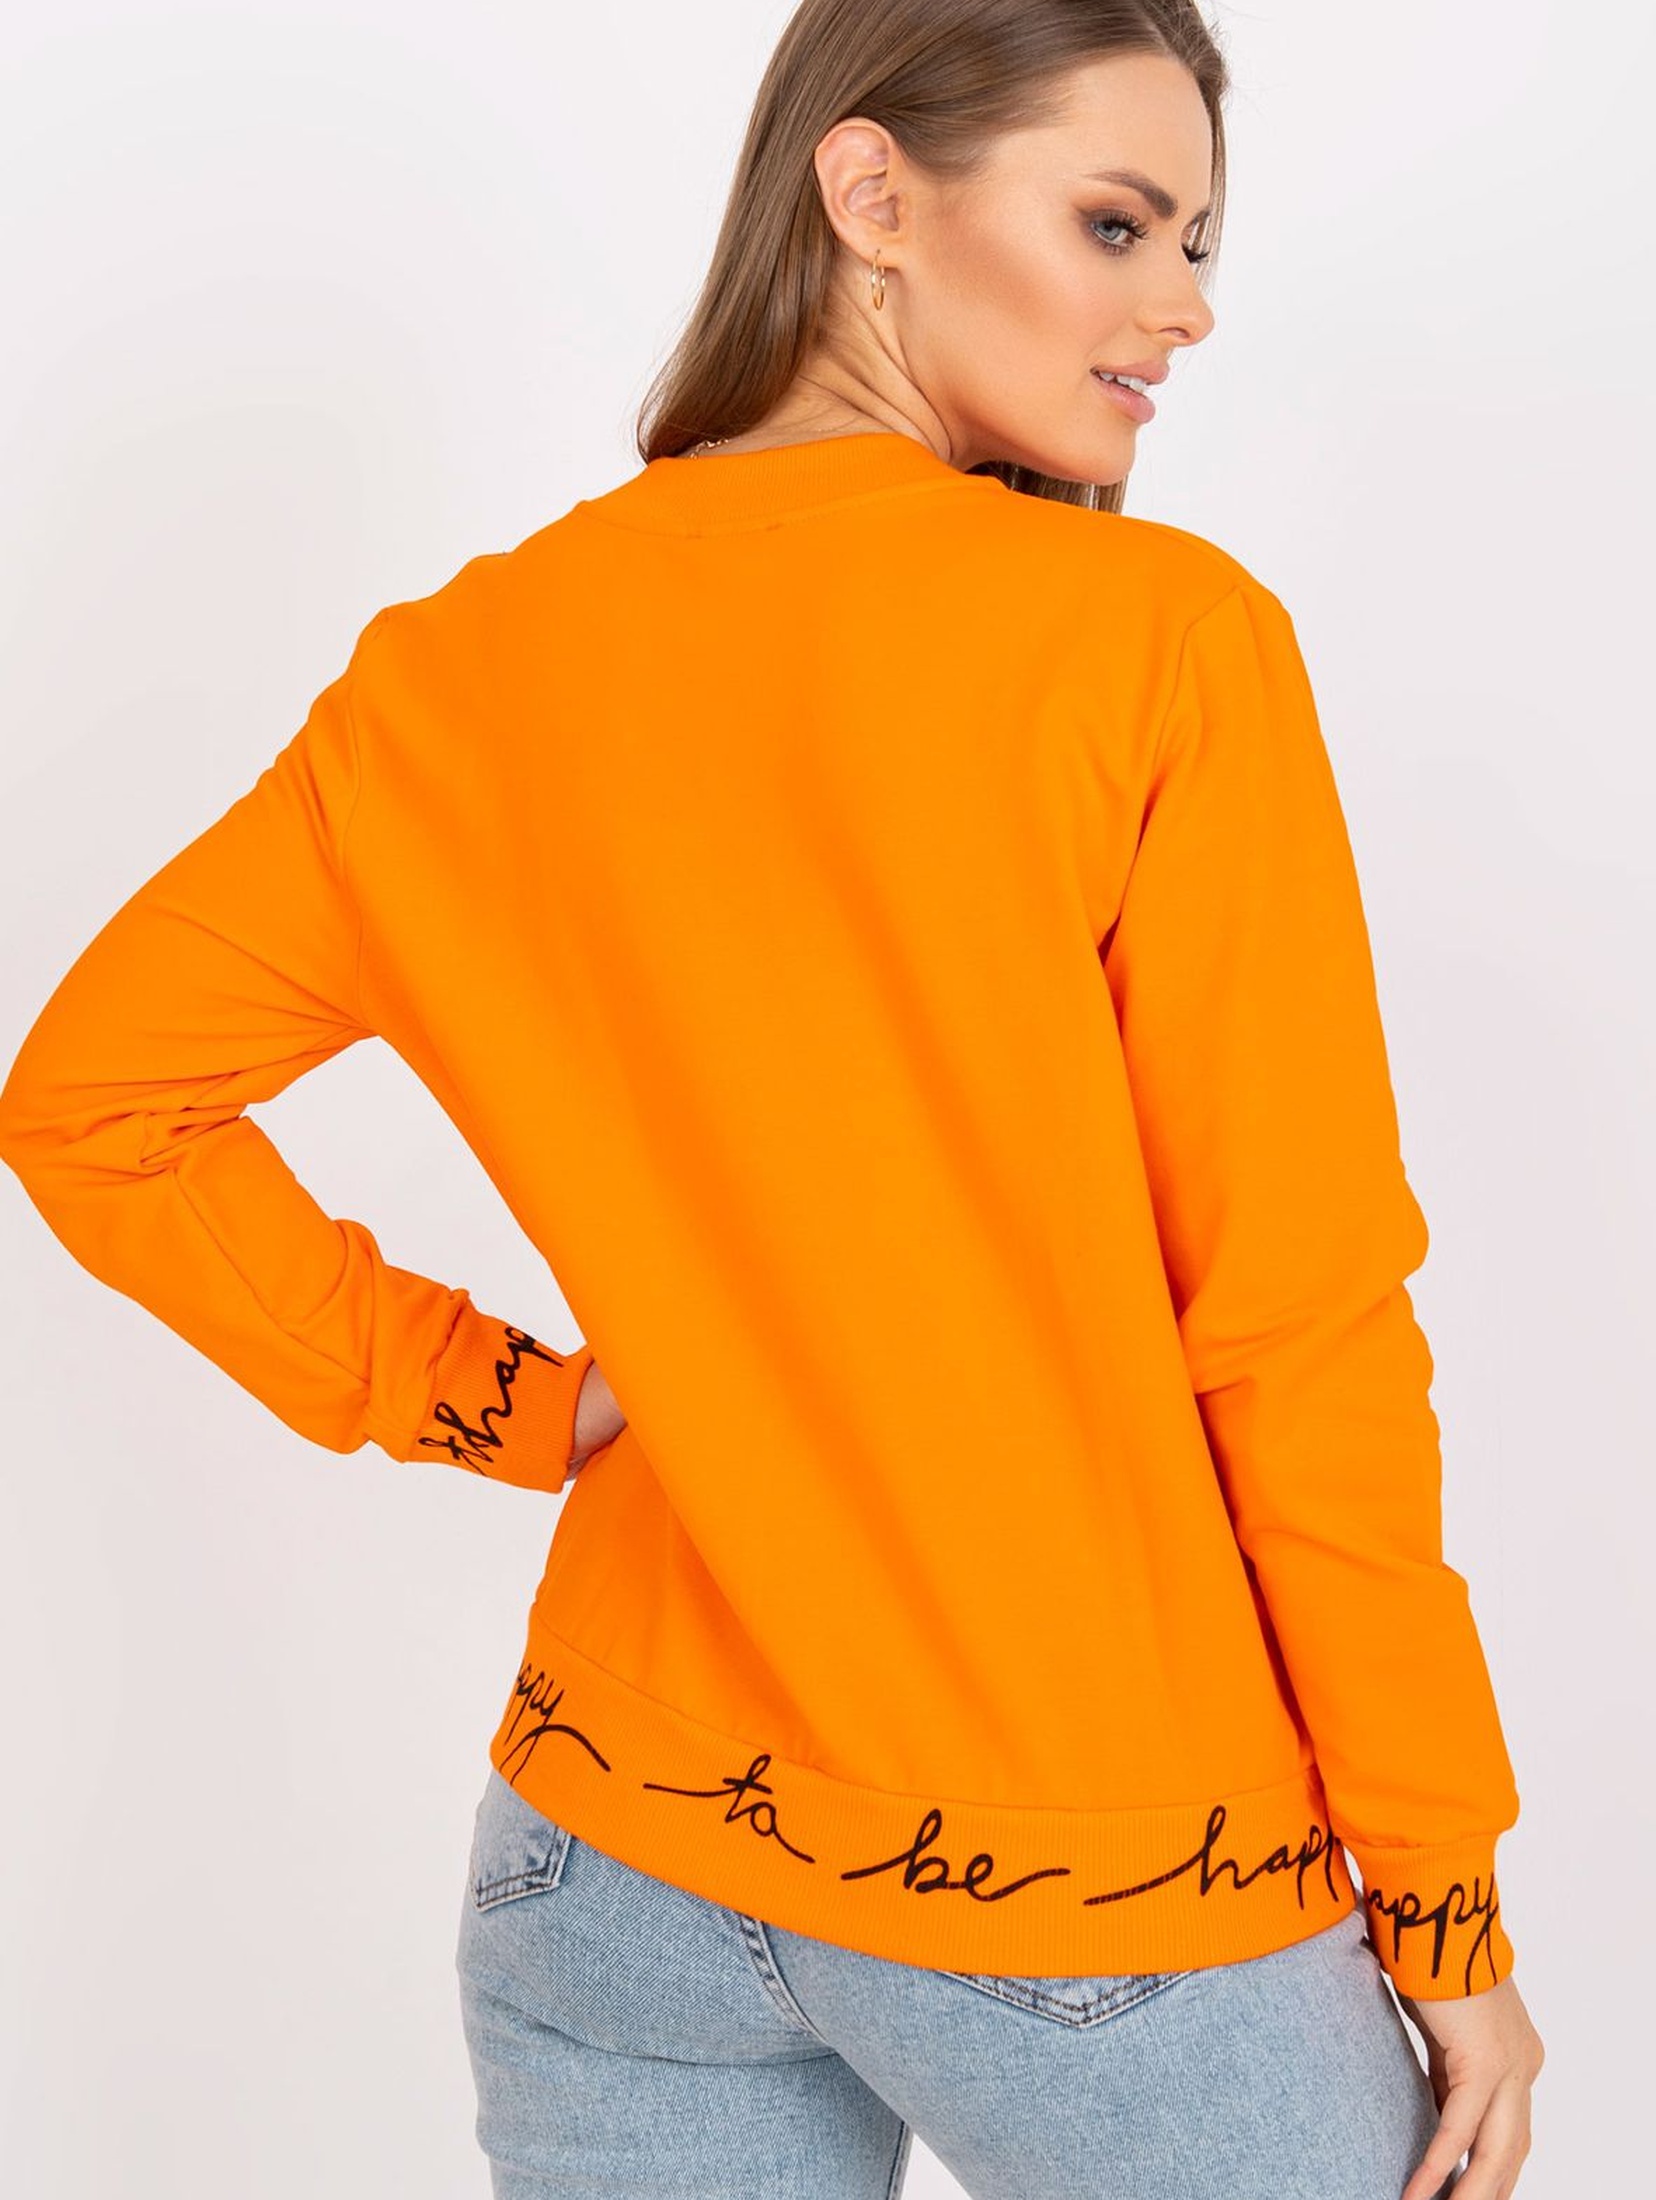 Bluza damska rozpinana z napisem  - pomarańczowa